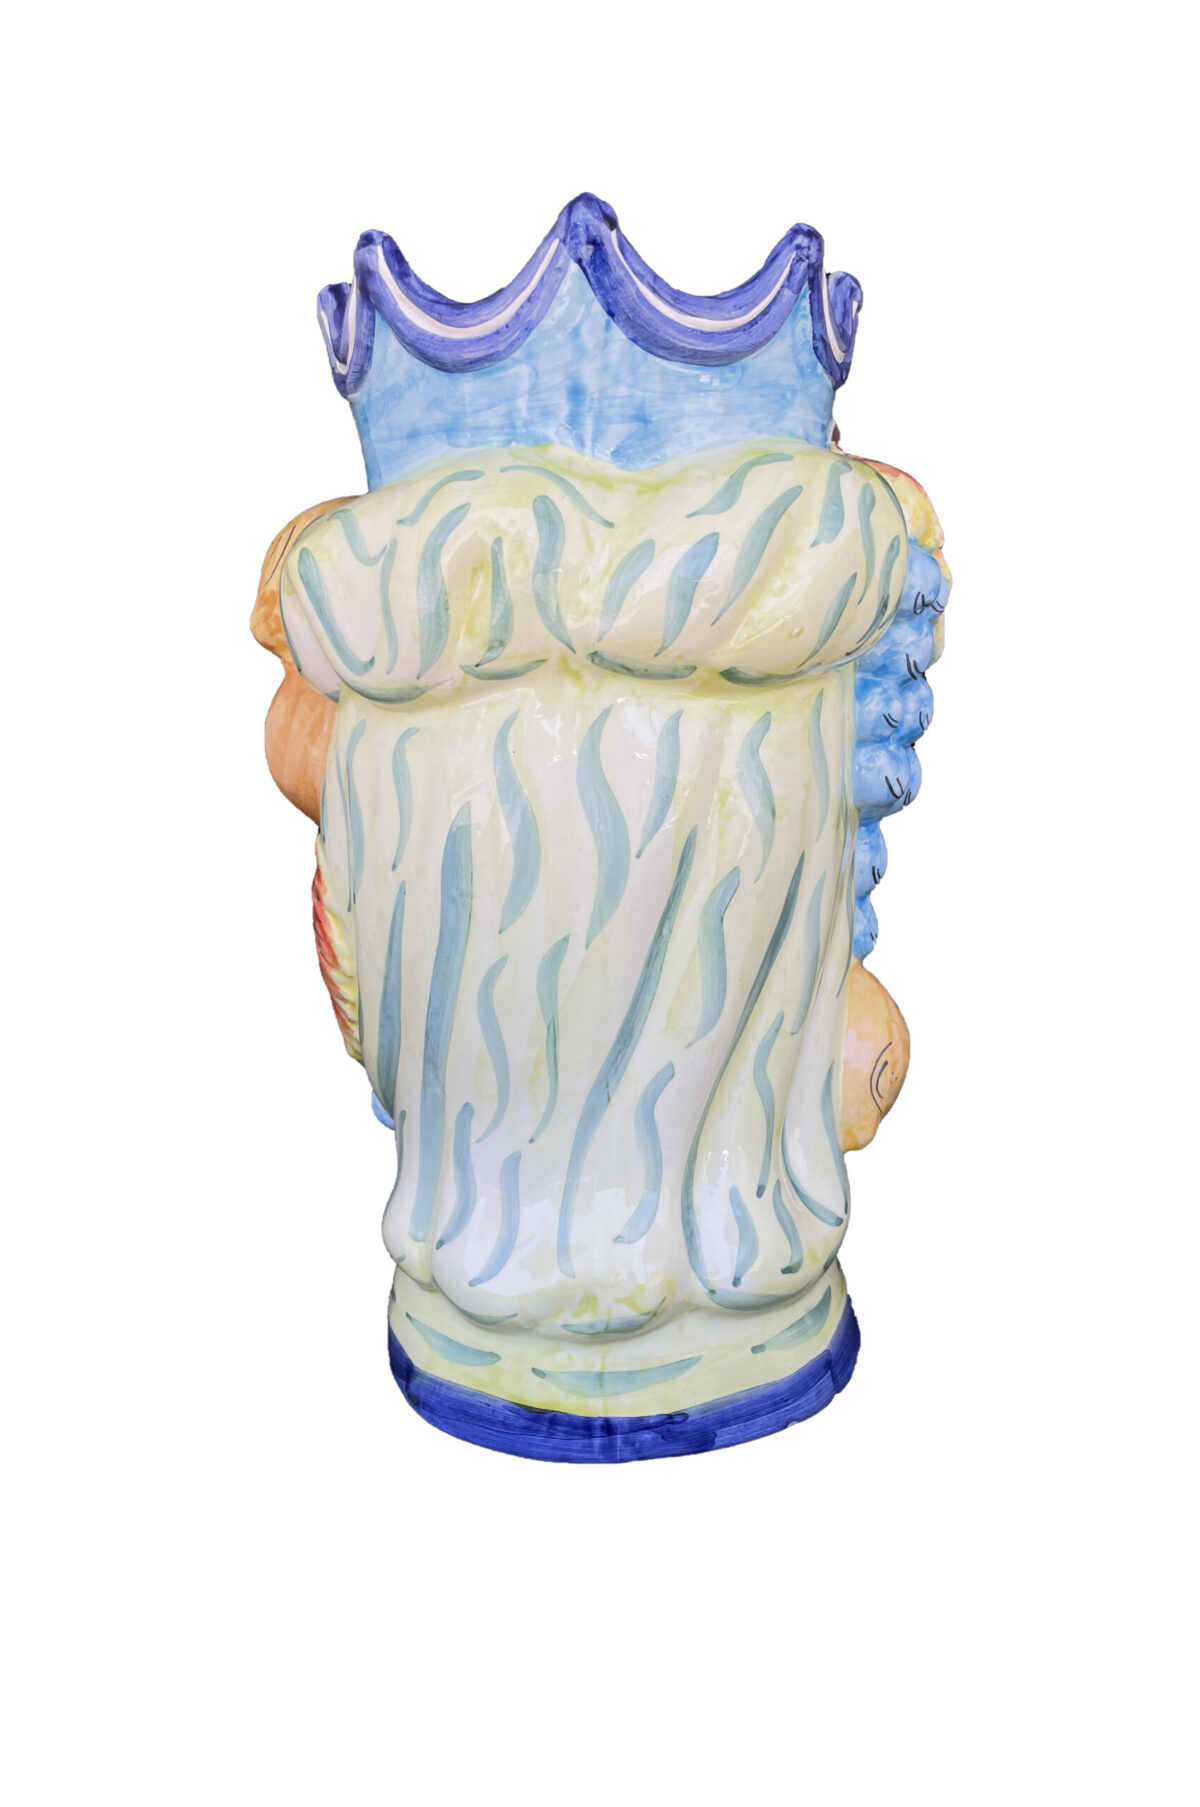 Vaso Testa di Moro uomo in ceramica dipinta sui toni del turchese, verde e giallo h. 35 cm